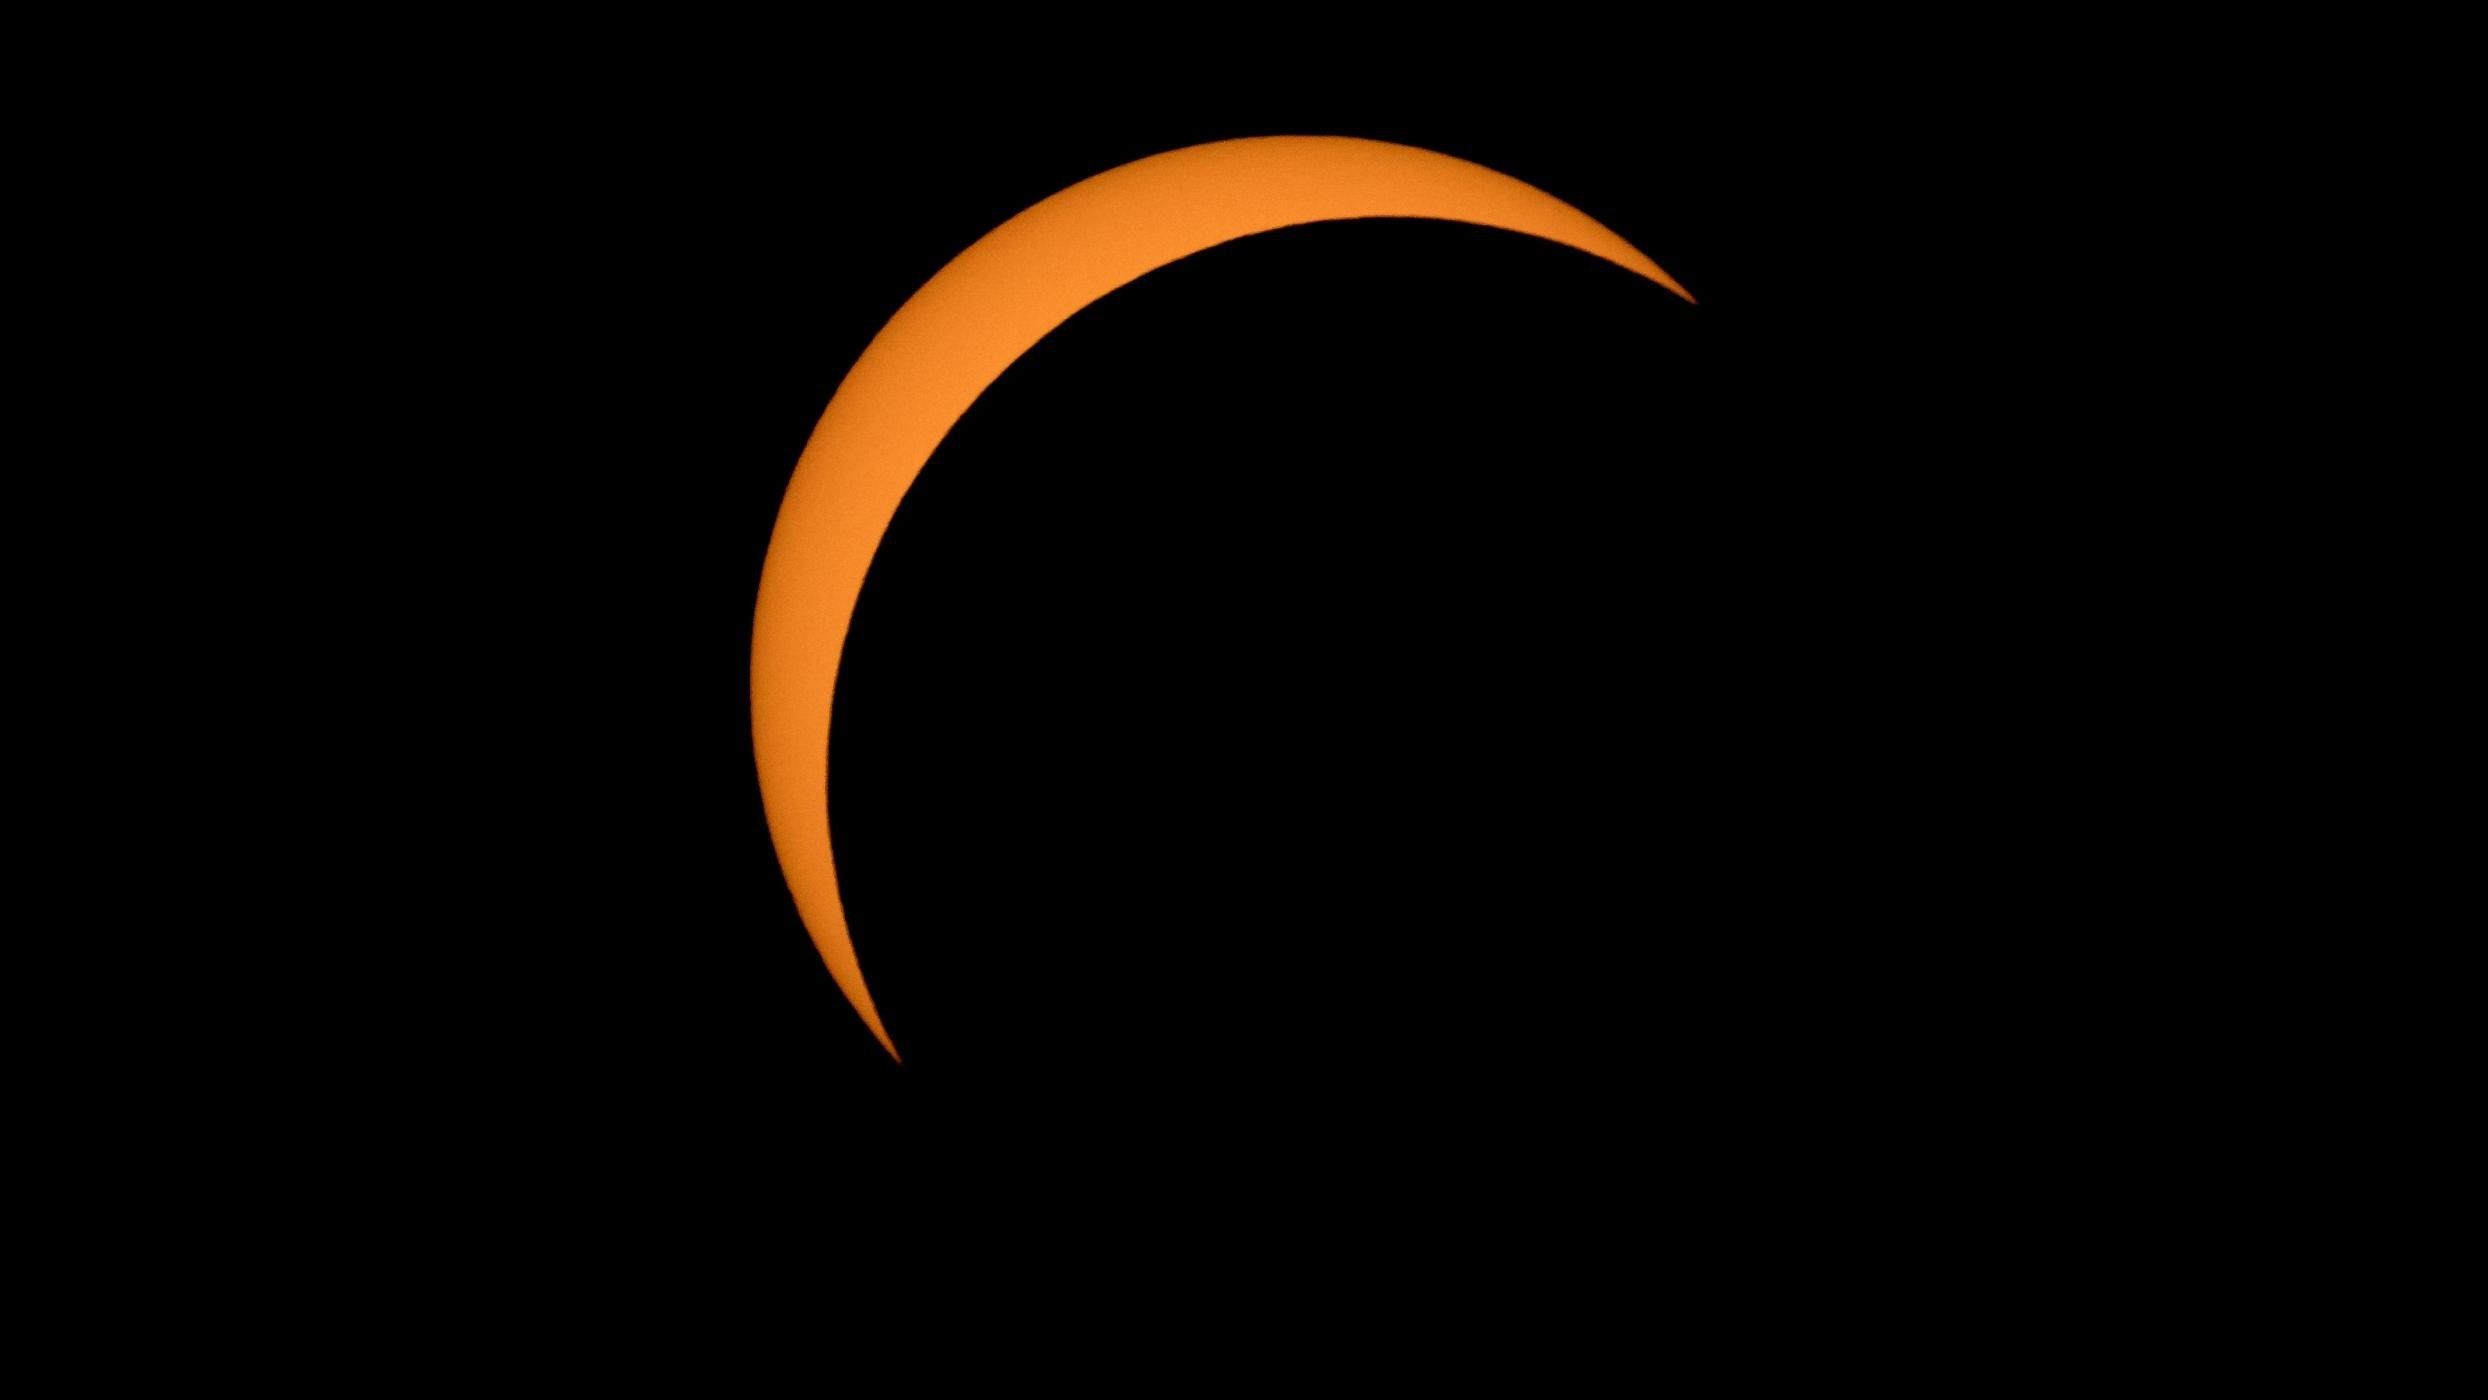 Eclissi totale di sole: ecco lo spettacolo visto negli Usa